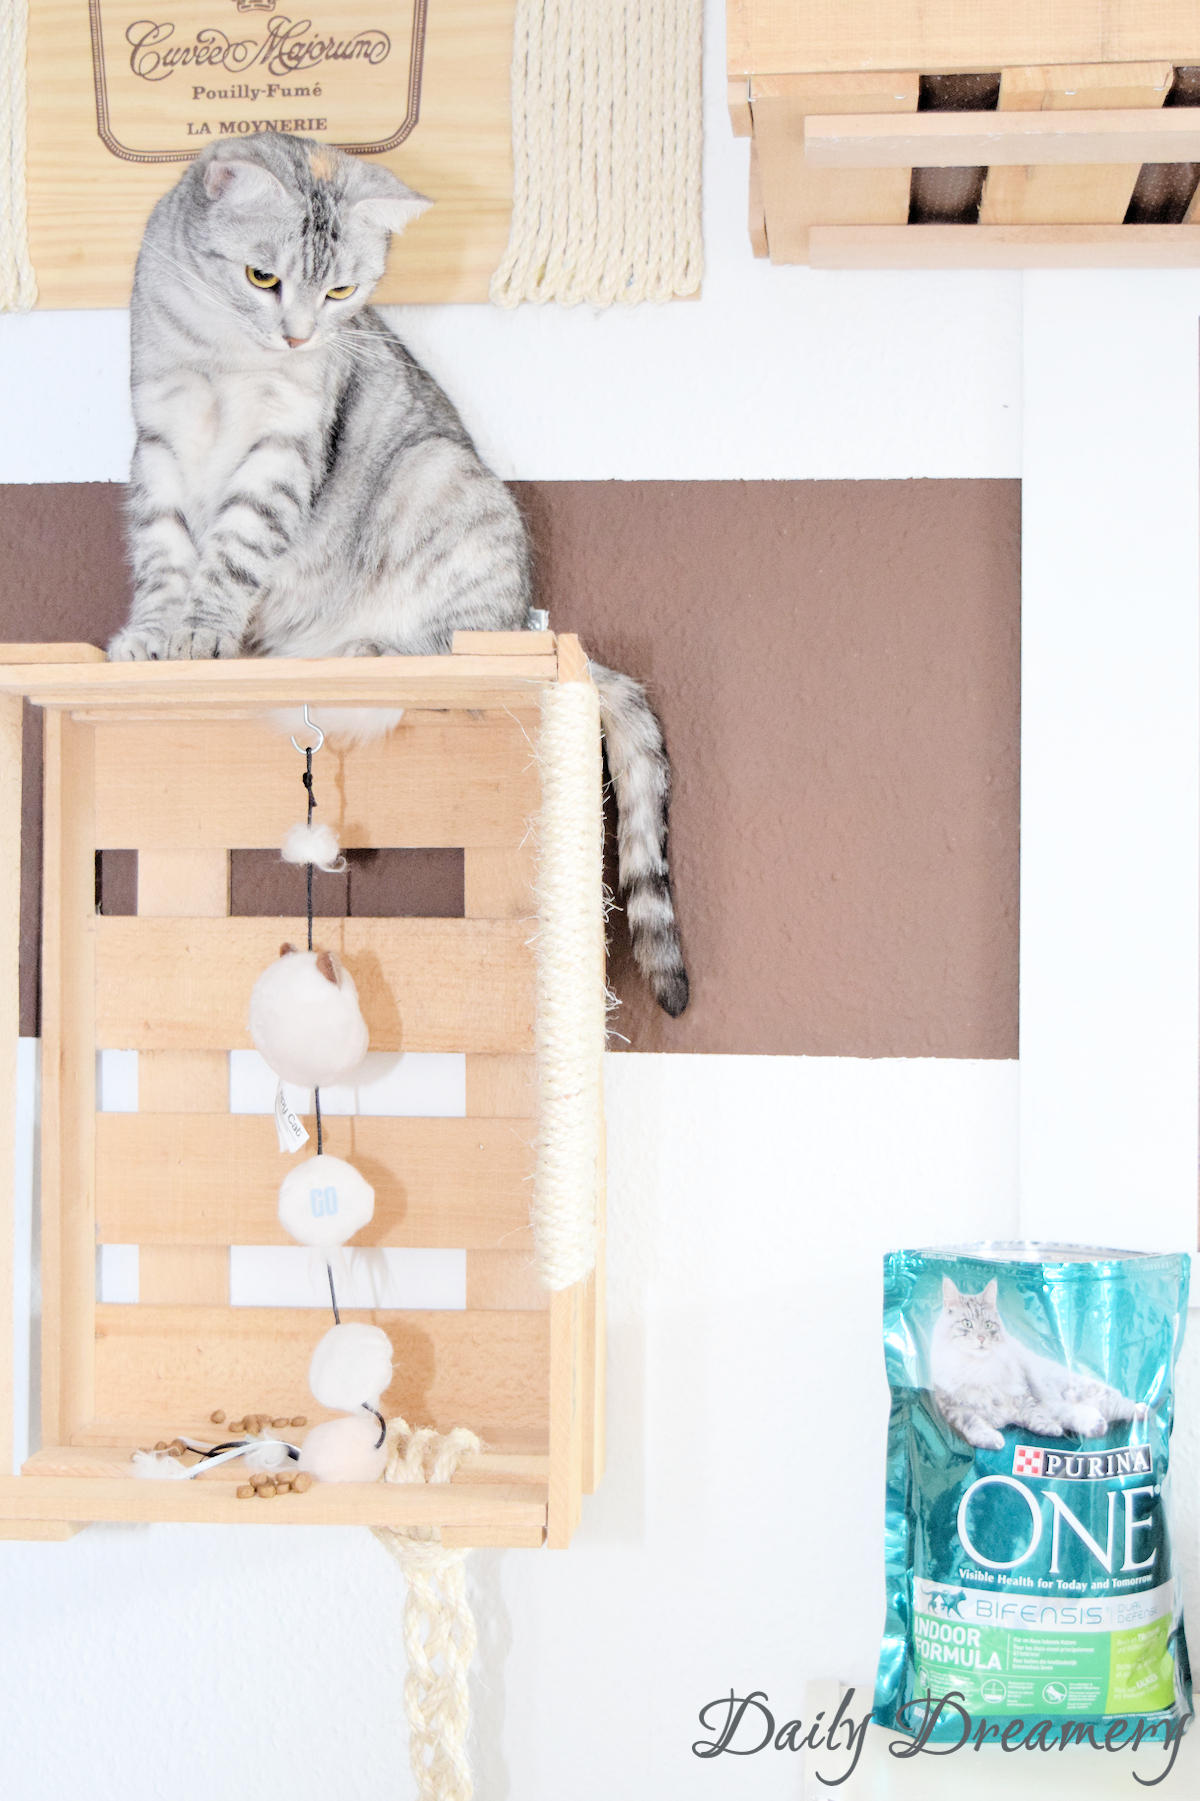 DIY-Kletterwand für Katzen ganz einfach aus alten Weinkisten bauen - perfekt für Wohnungskatzen #diy #katzen #katzenmöbel